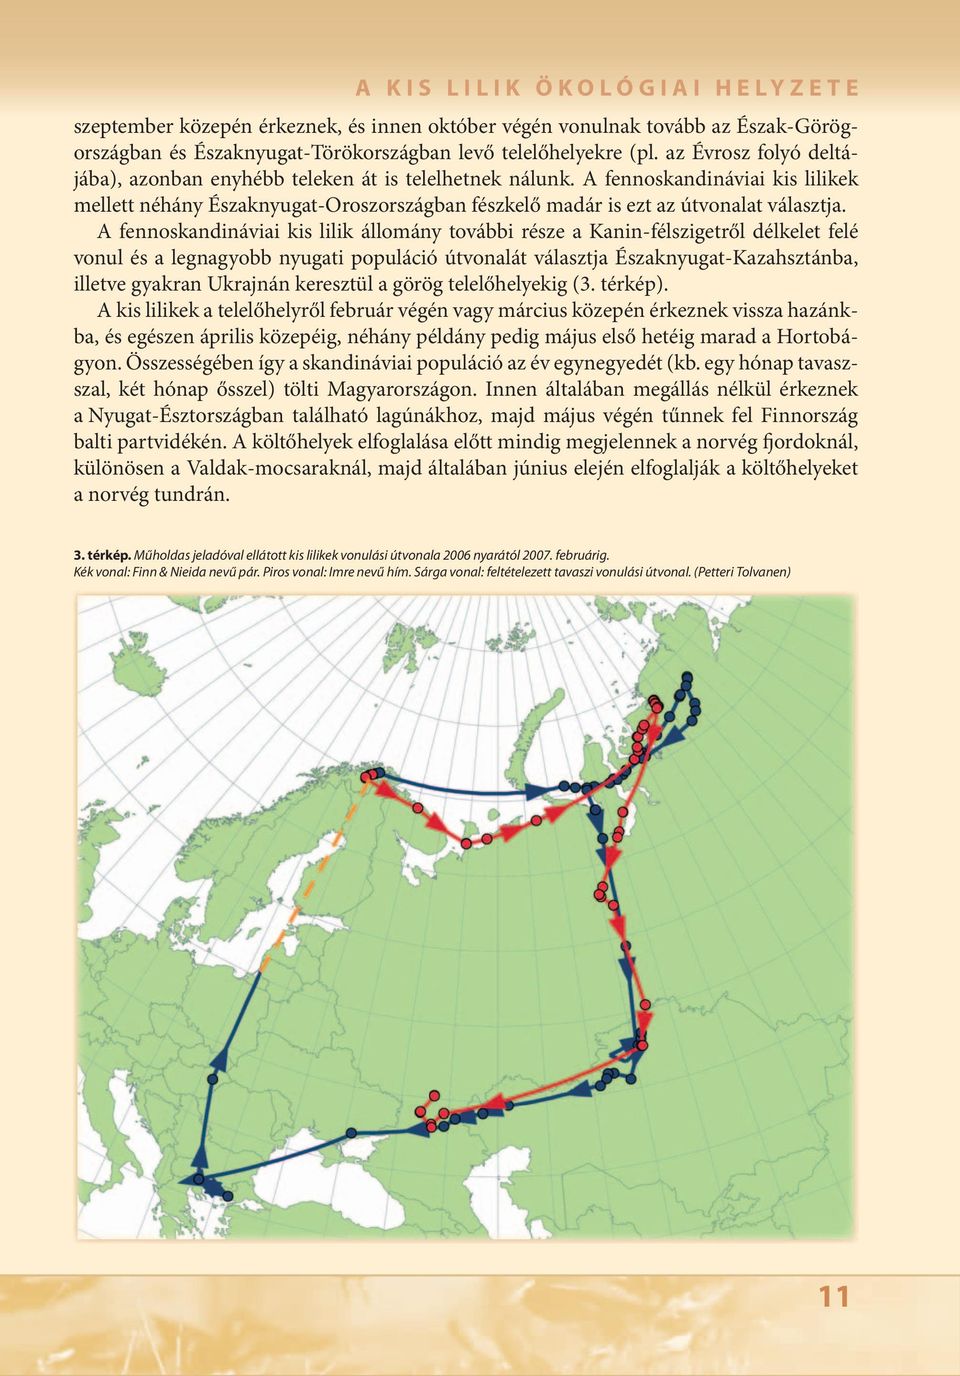 A fennoskandináviai kis lilik állomány további része a Kanin-félszigetről délkelet felé vonul és a legnagyobb nyugati populáció útvonalát választja Északnyugat-Kazahsztánba, illetve gyakran Ukrajnán